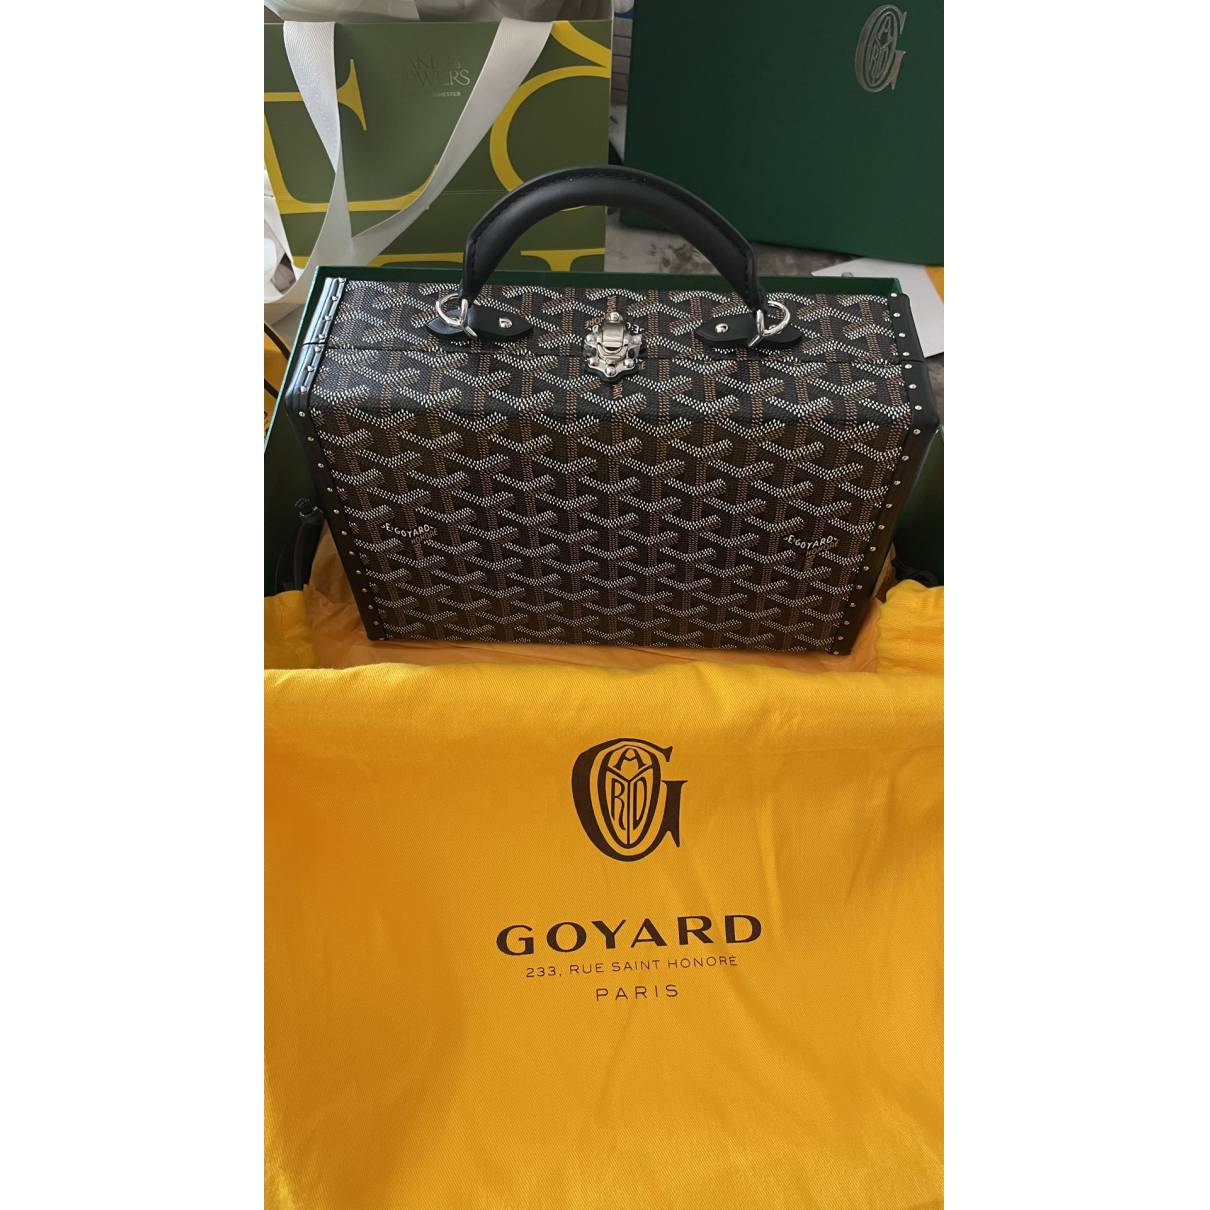 Goyard Goyardine Grand Hotel Trunk Bag Green